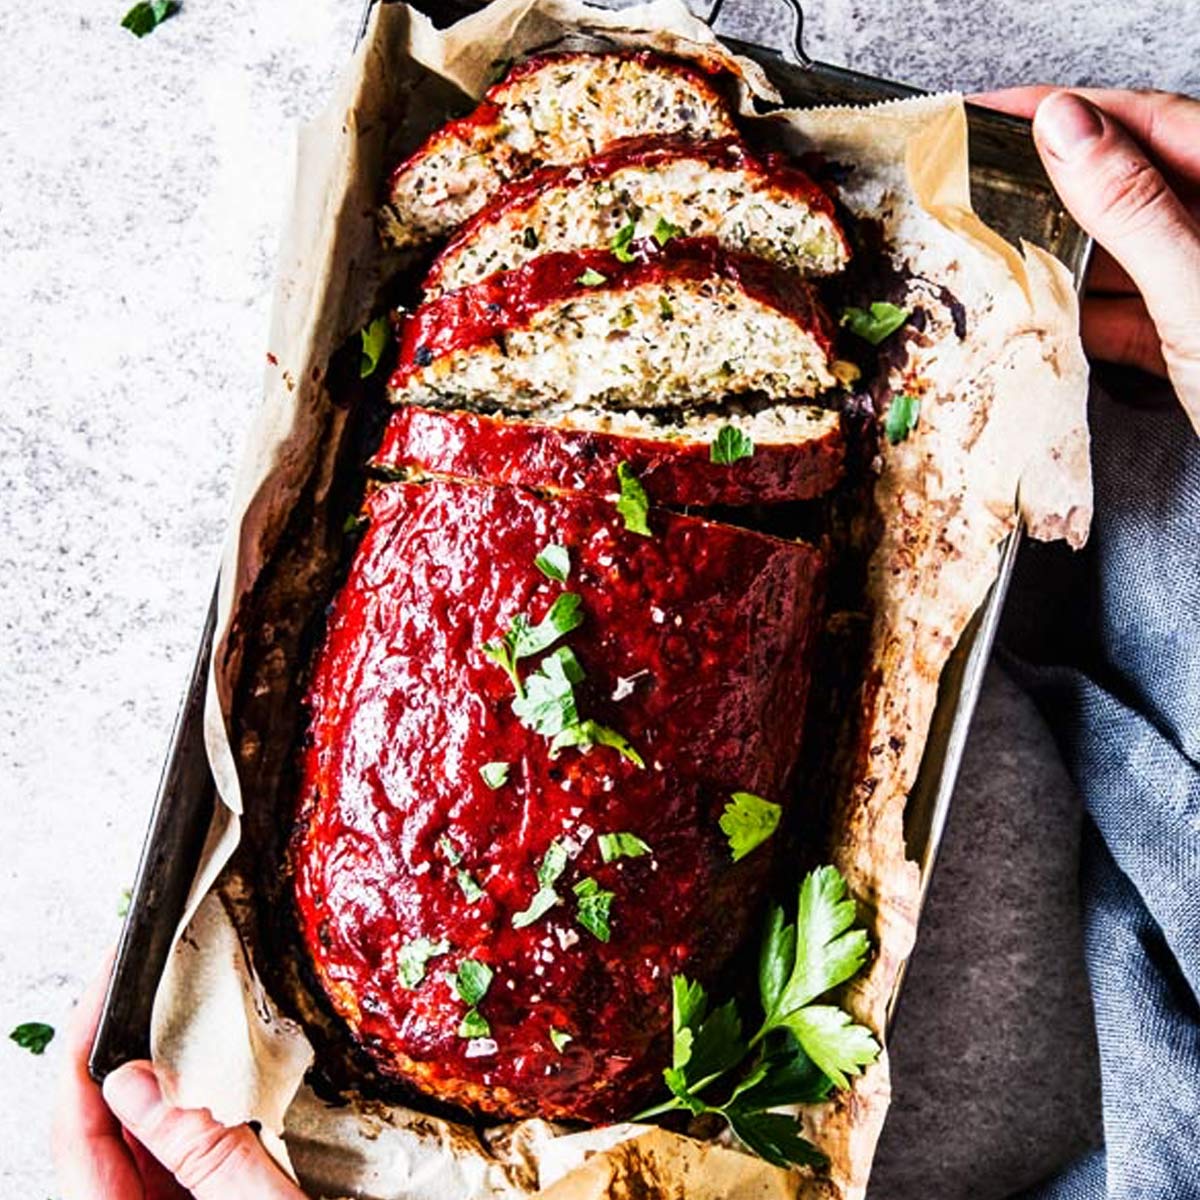 Best Turkey Meatloaf - How to Make Turkey Meatloaf